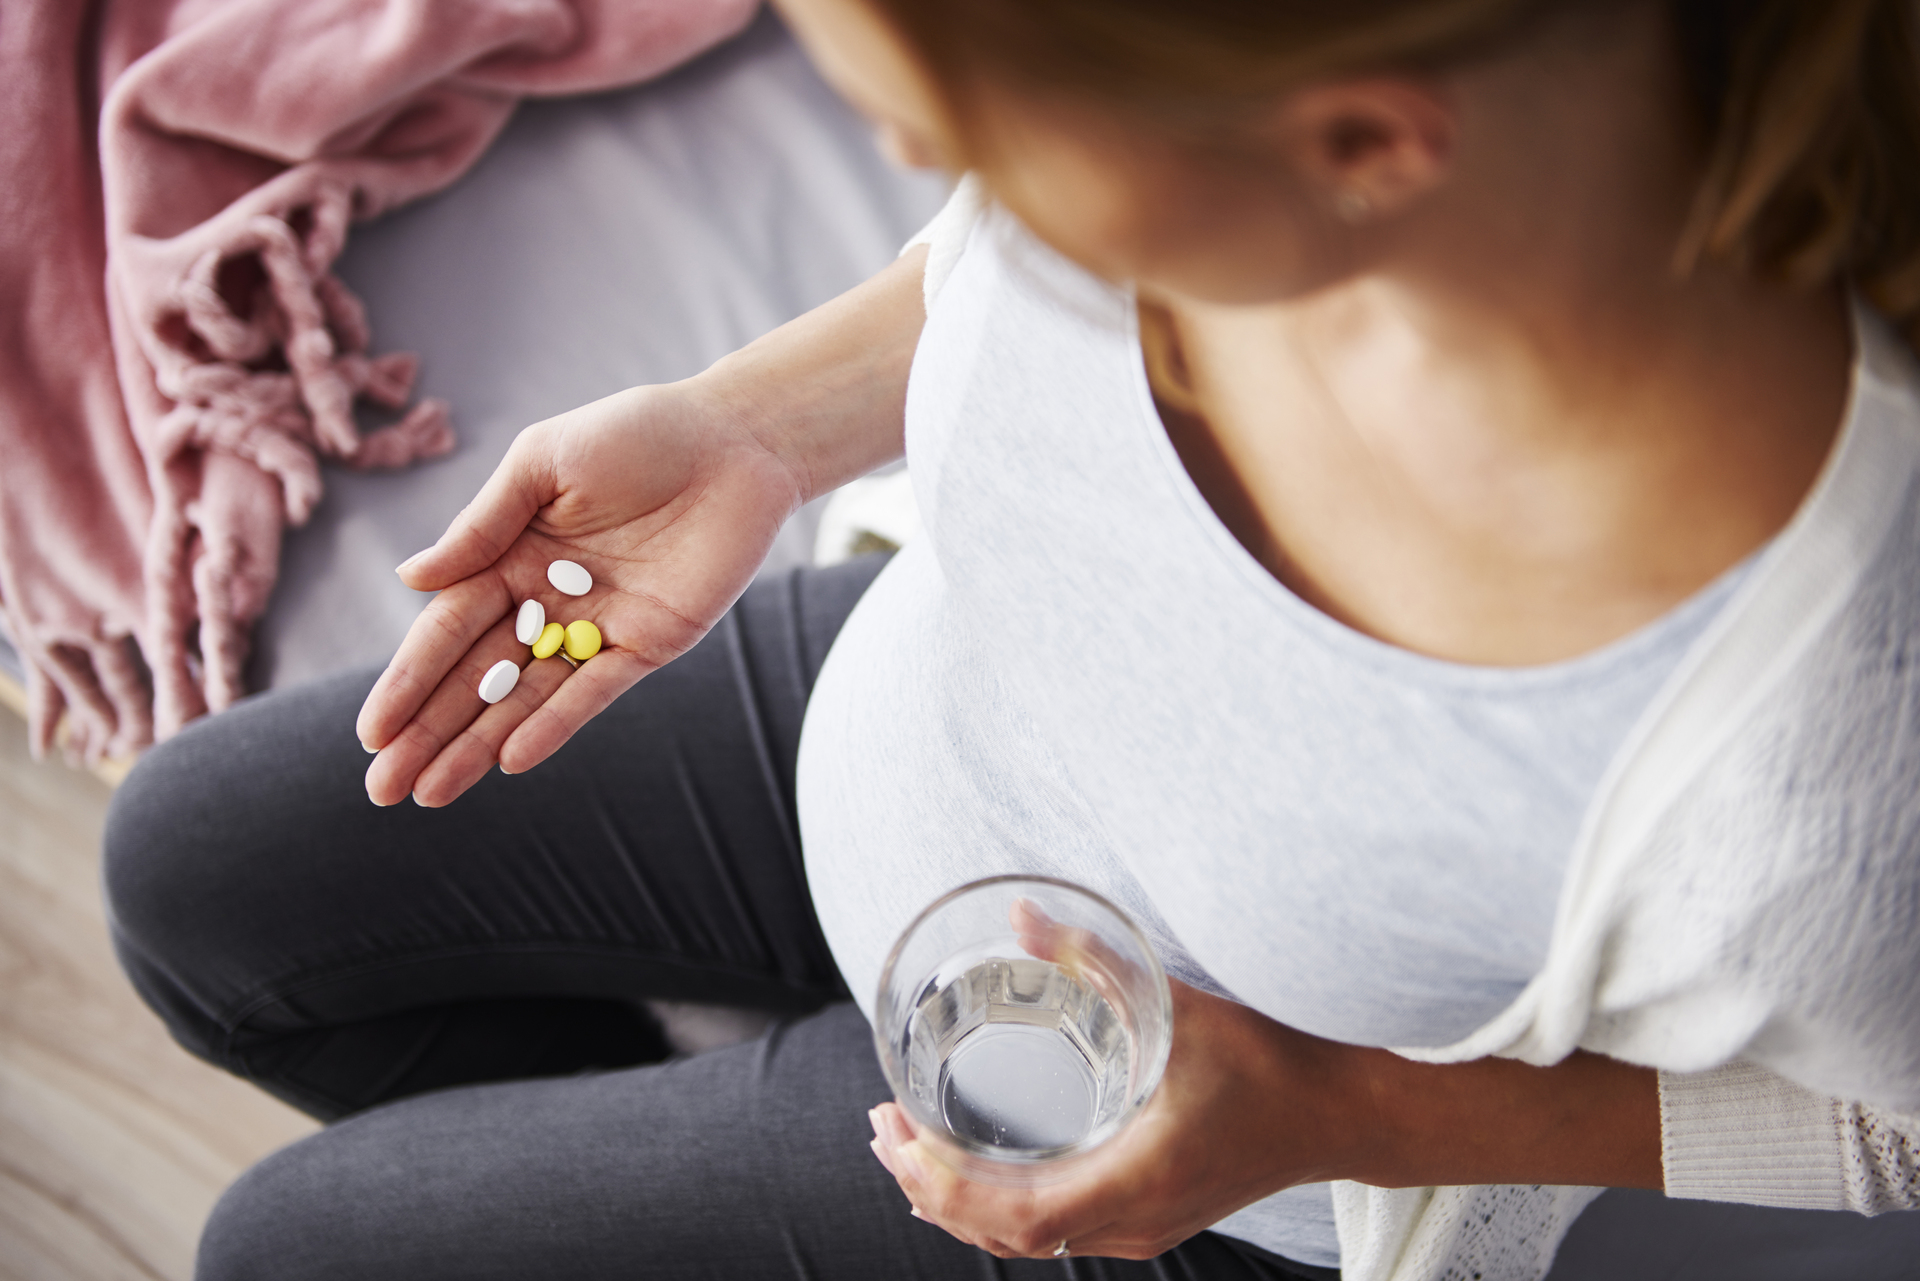 Tomar antidepresivos en el embarazo afecta al desarrollo cerebral del feto